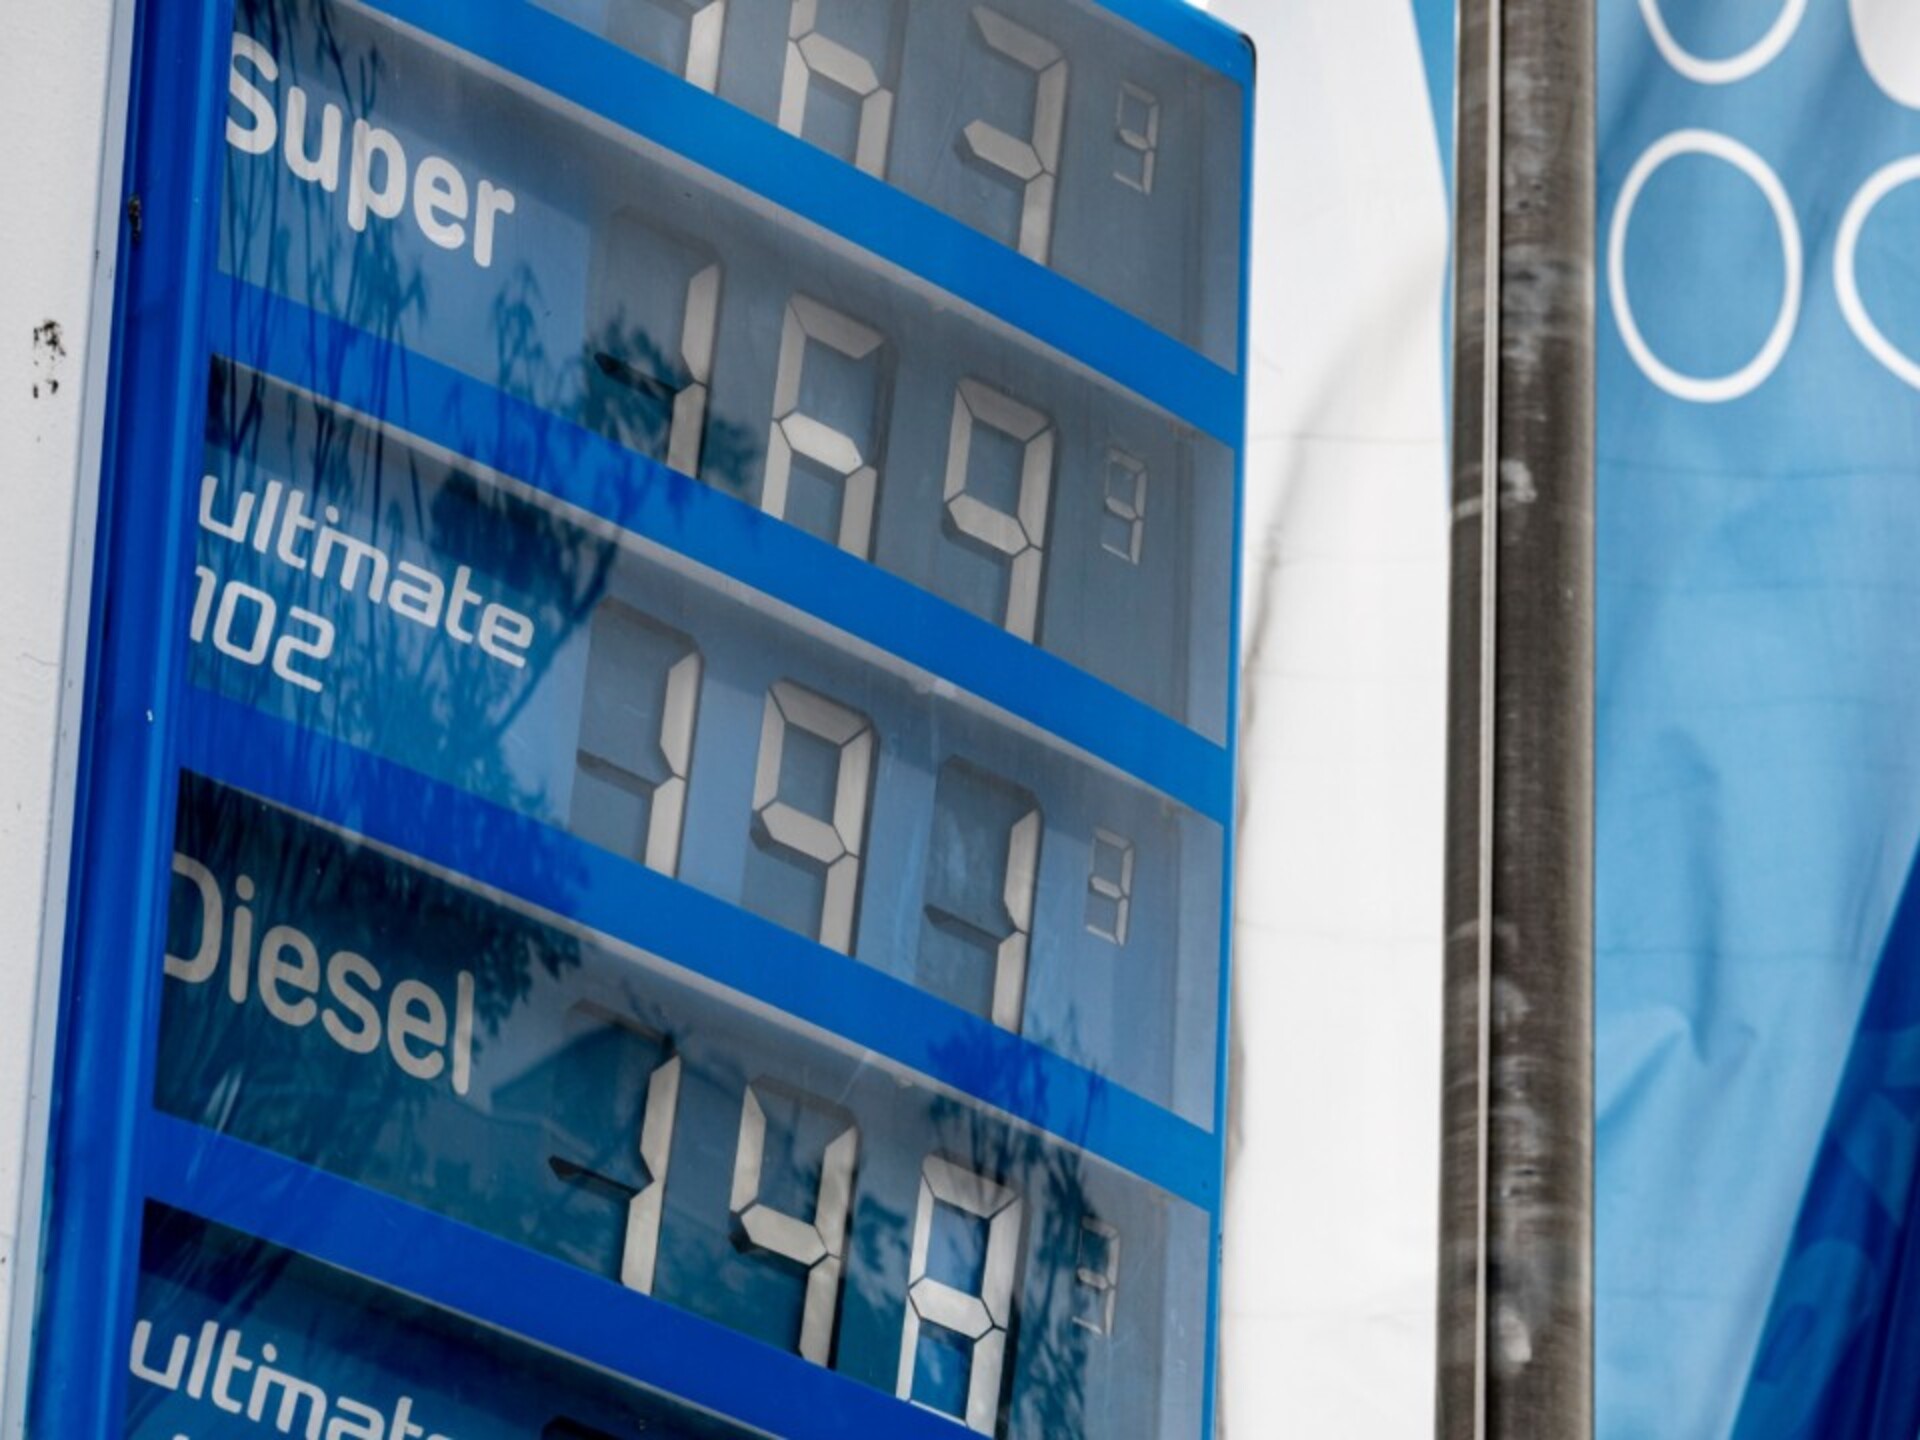 Diesel und Benzin: Tipps zum Spritsparen